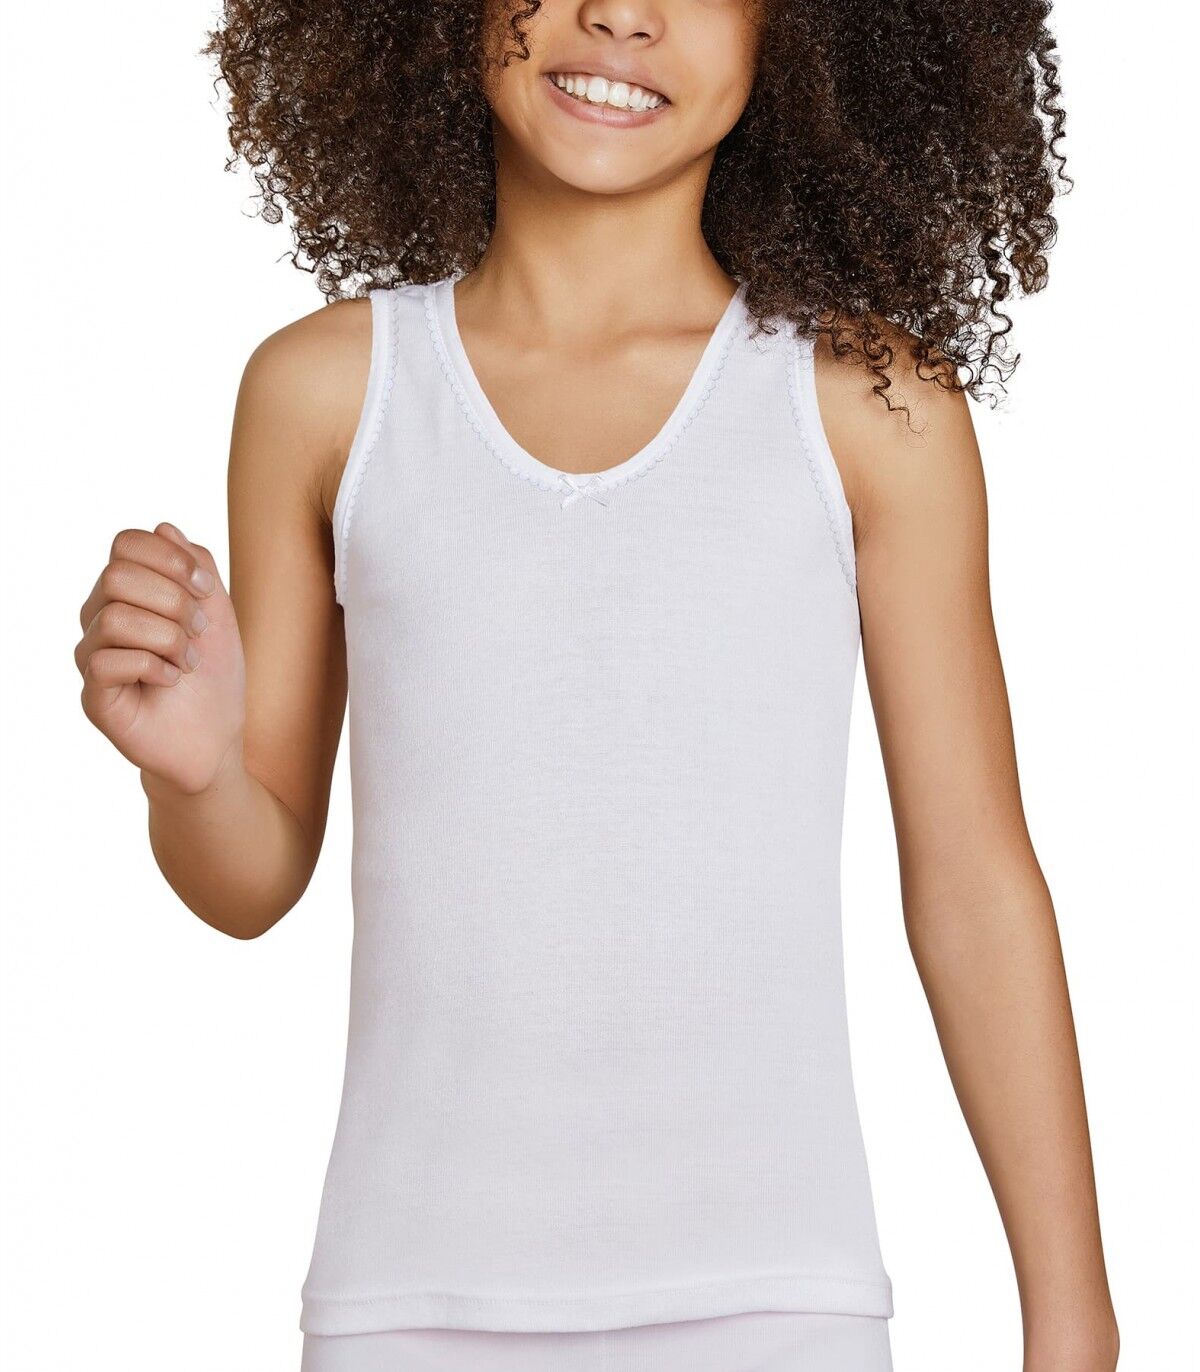 Camiseta infantil Tirantes Ysabel Mora 18306 16 Blanco